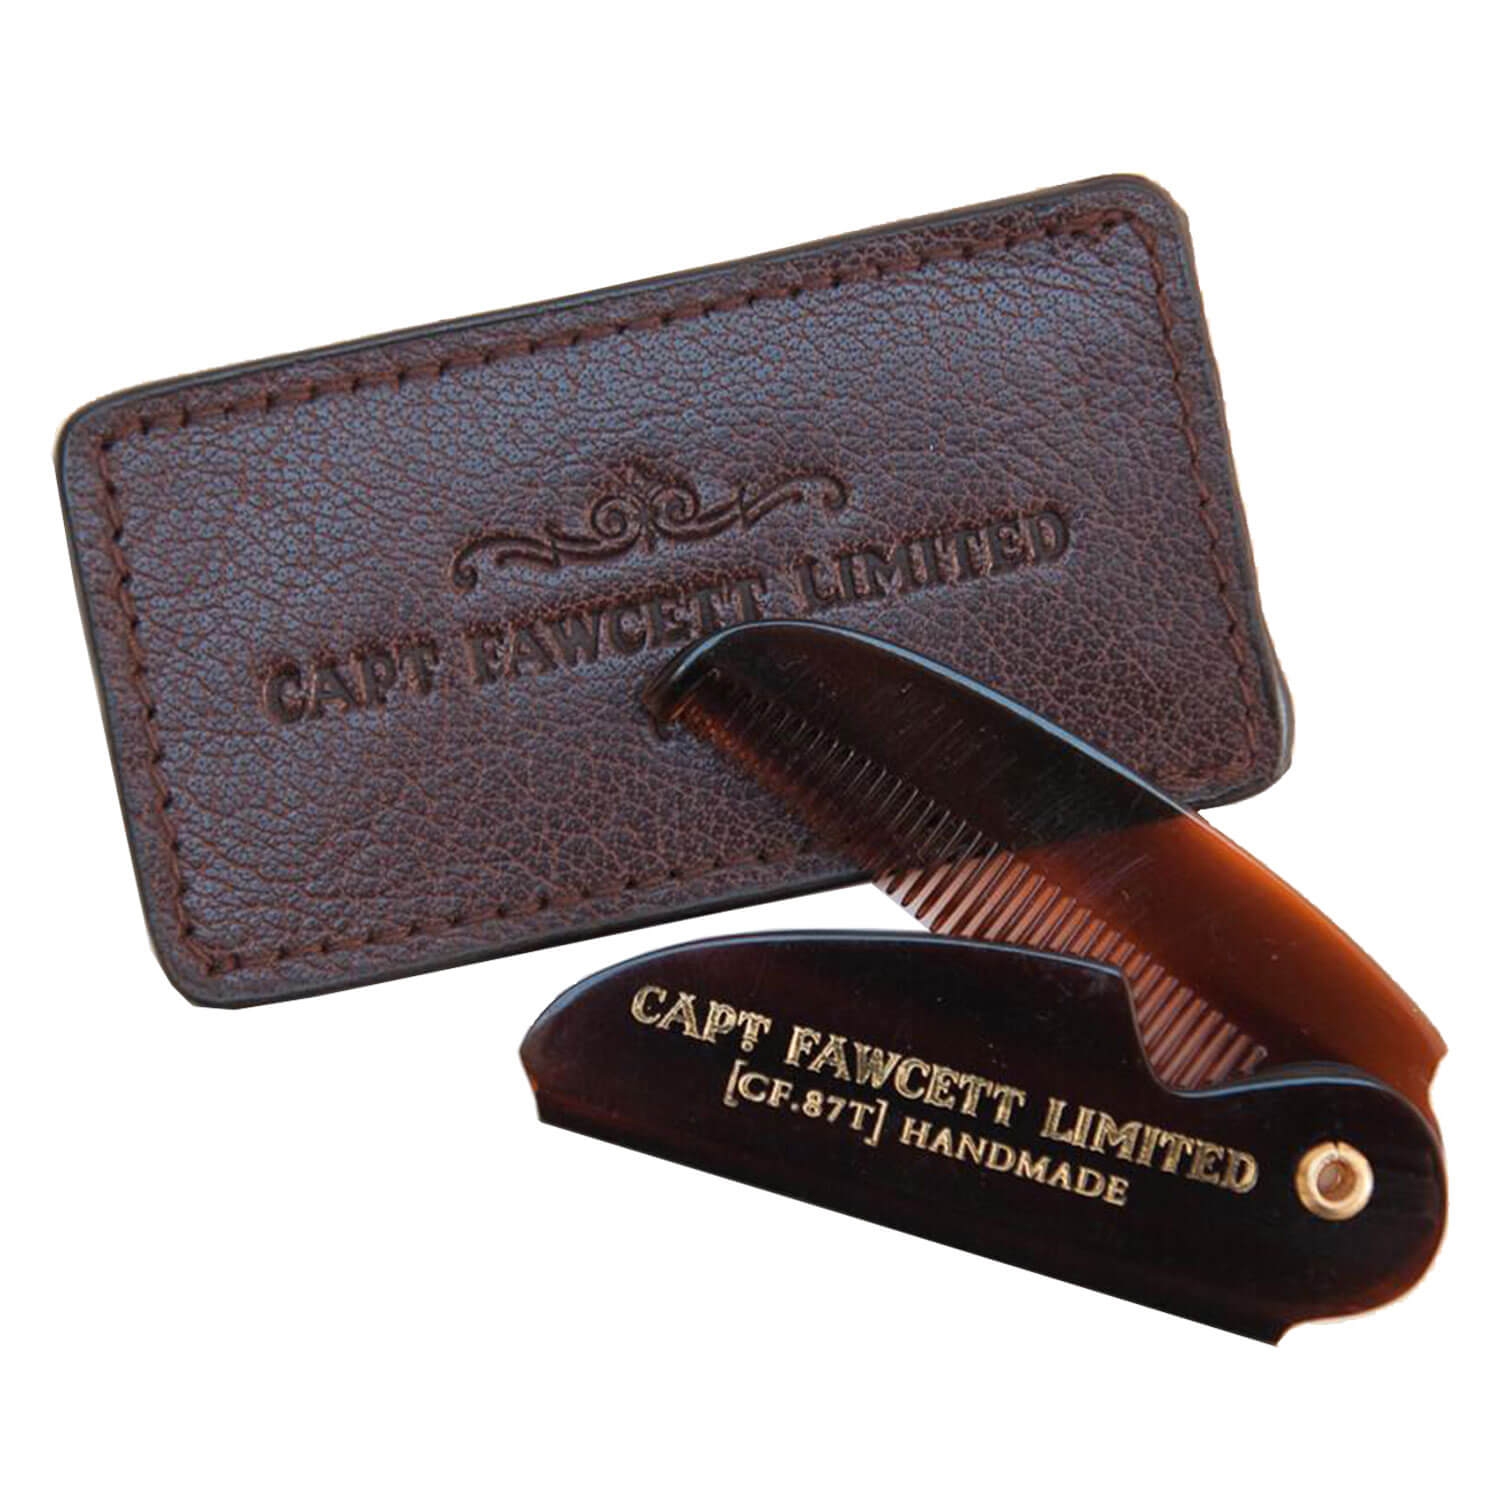 Produktbild von Capt. Fawcett Tools - Folding Pocket Moustache Comb with Leather Case